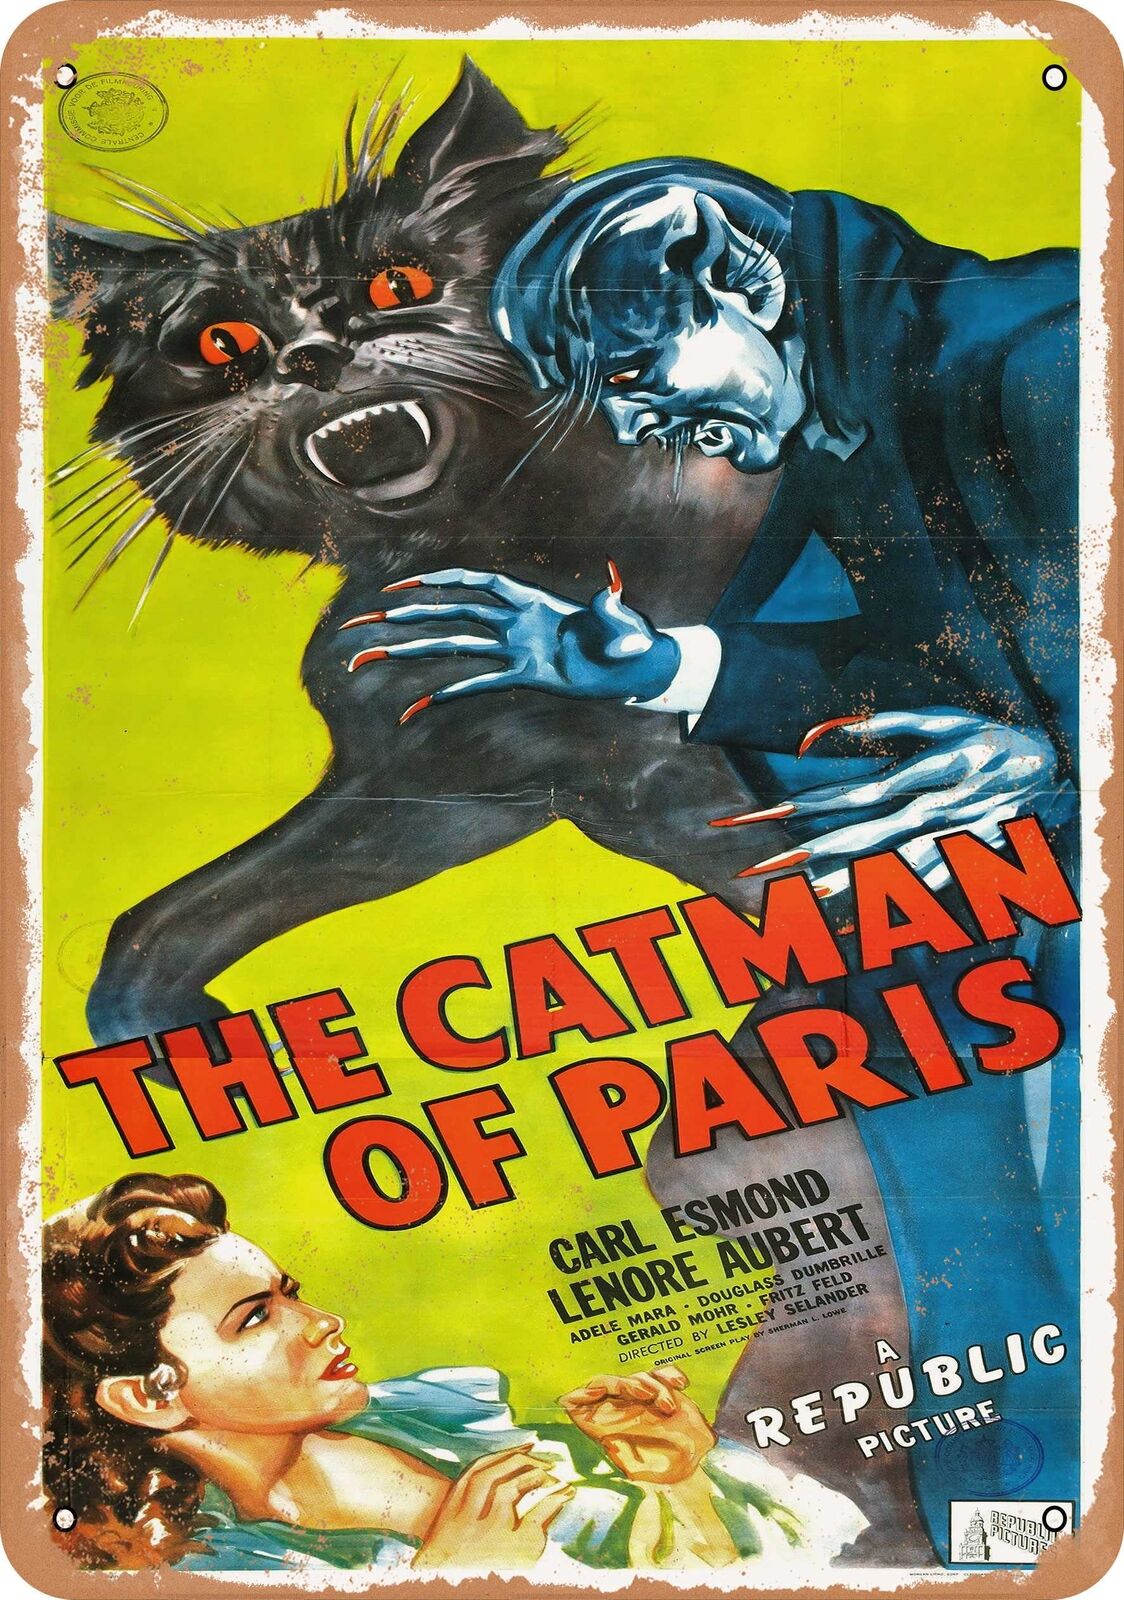 Metal Sign - Catman of Paris (1946) - Vintage Look